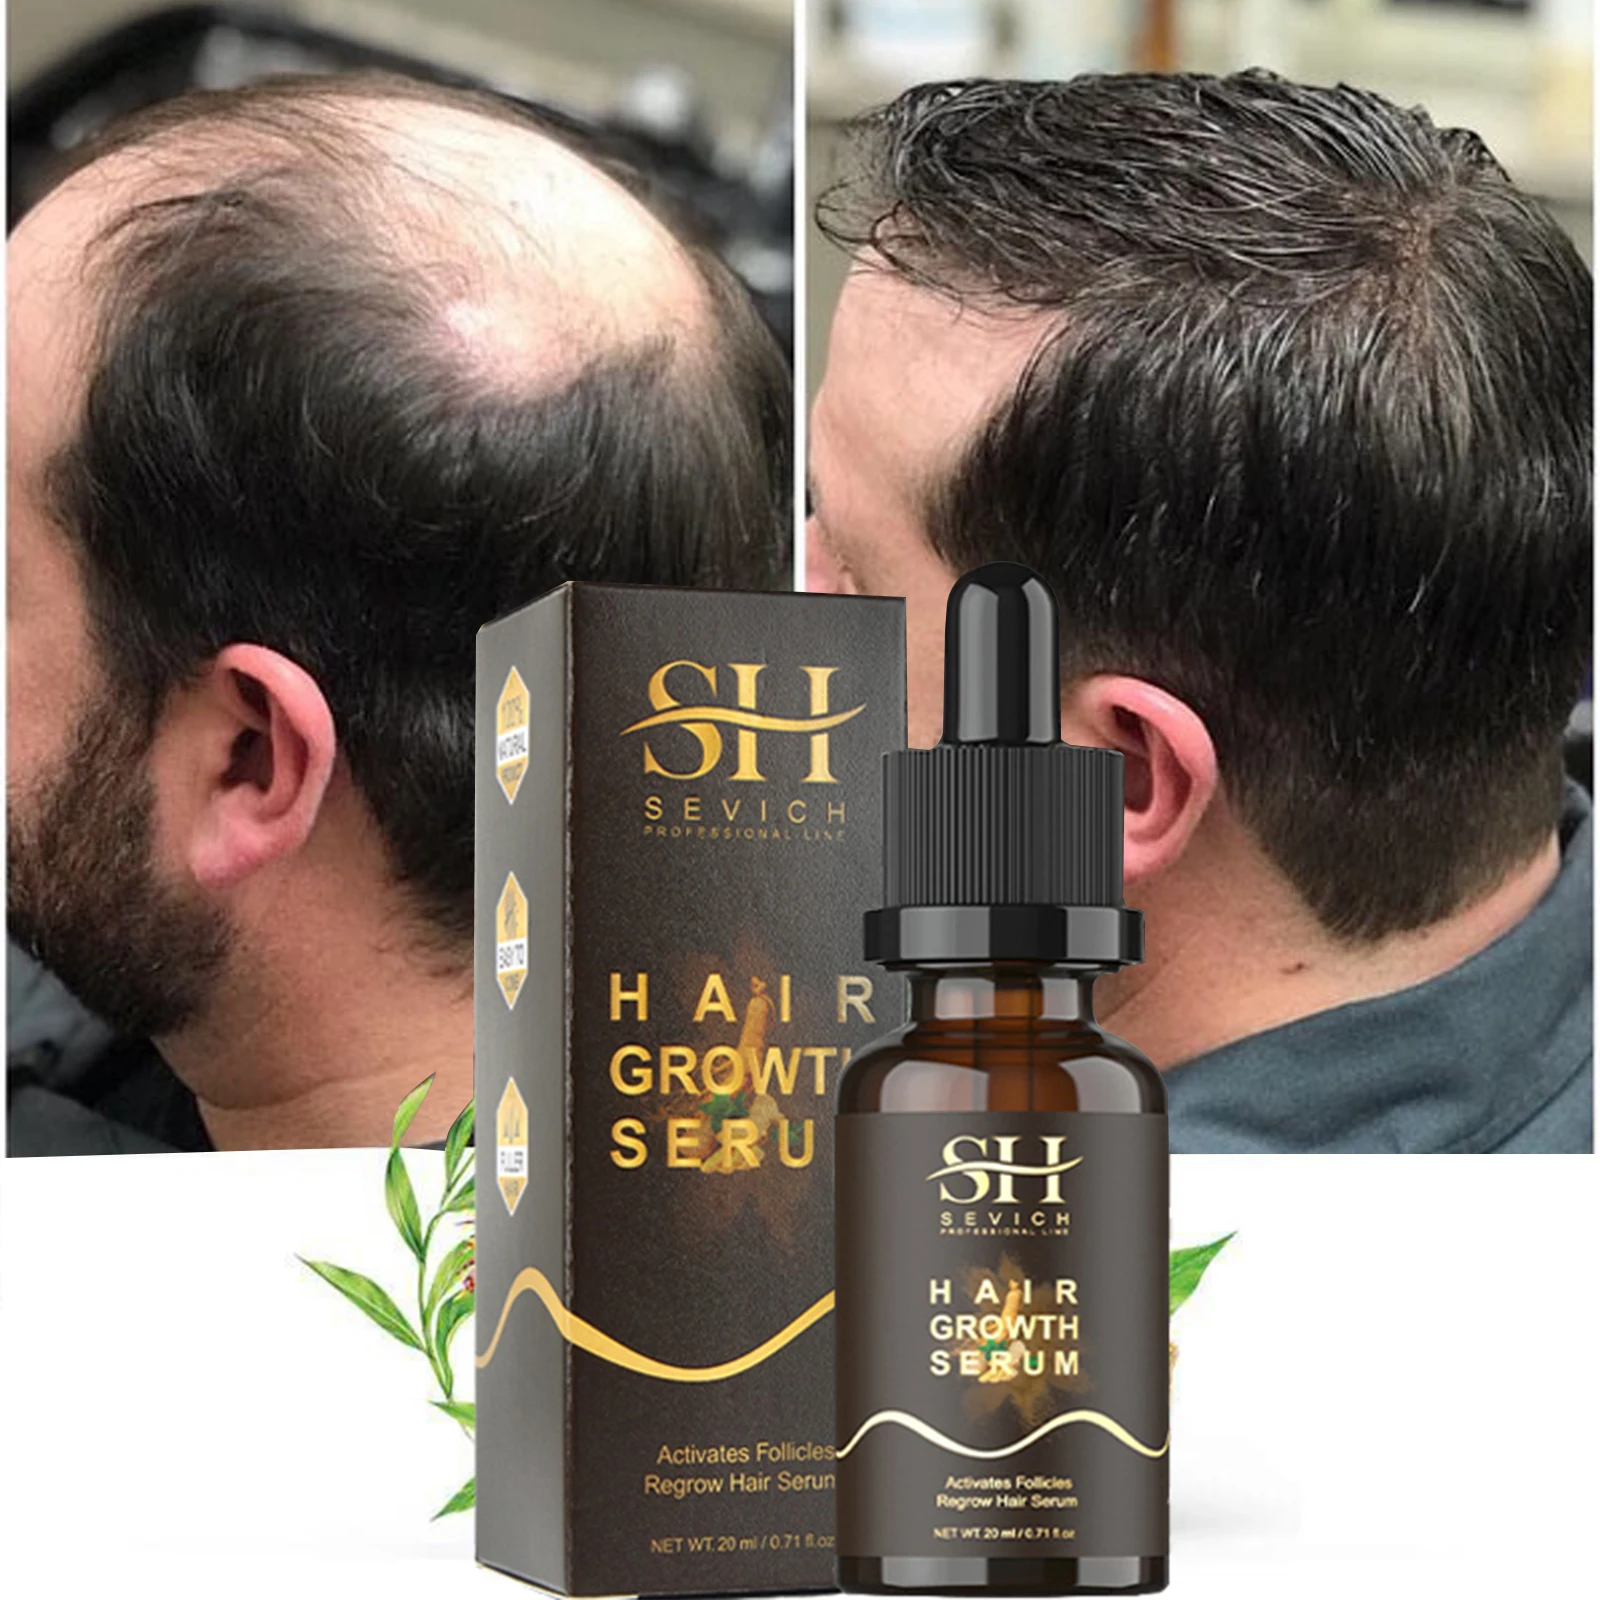 Hair Growth Products Fast Growing Hair Essential Oil Prevent Hair Loss Liquid Scalp Treatment Hair Growth Serum Beauty Hair Care